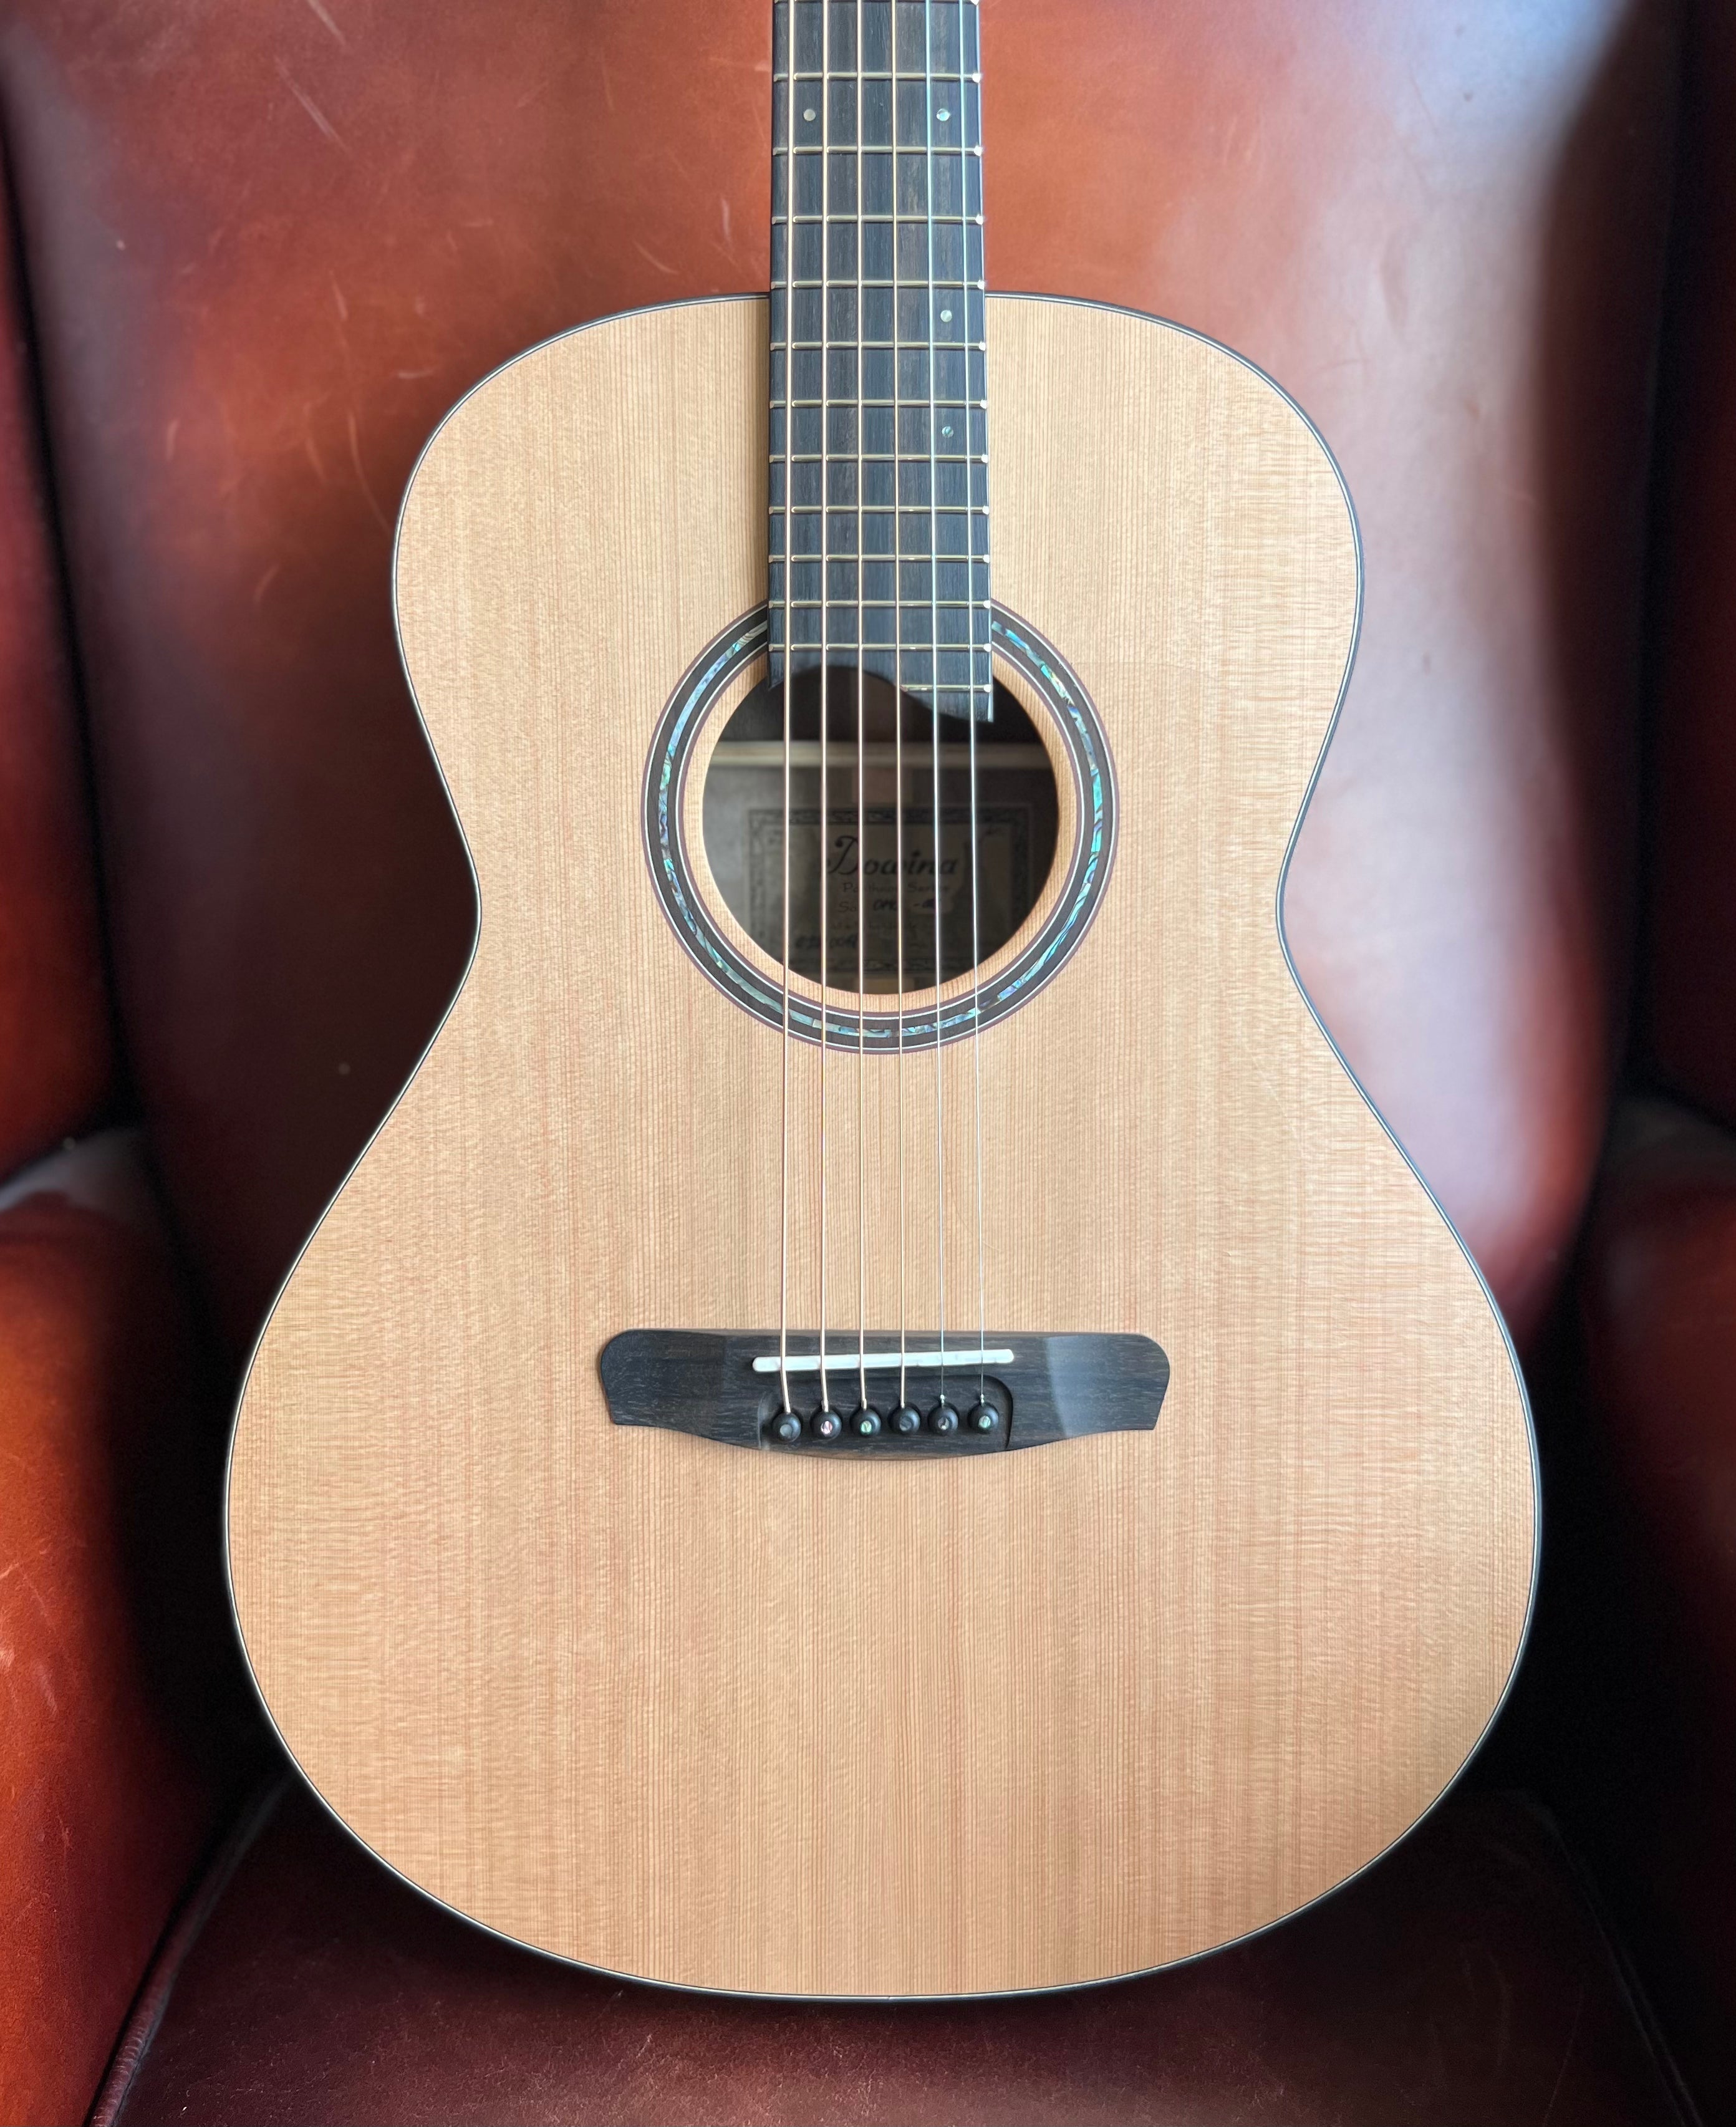 Dowina Walnut OMG Cedar.  OM Body Acoustic Guitar, Acoustic Guitar for sale at Richards Guitars.